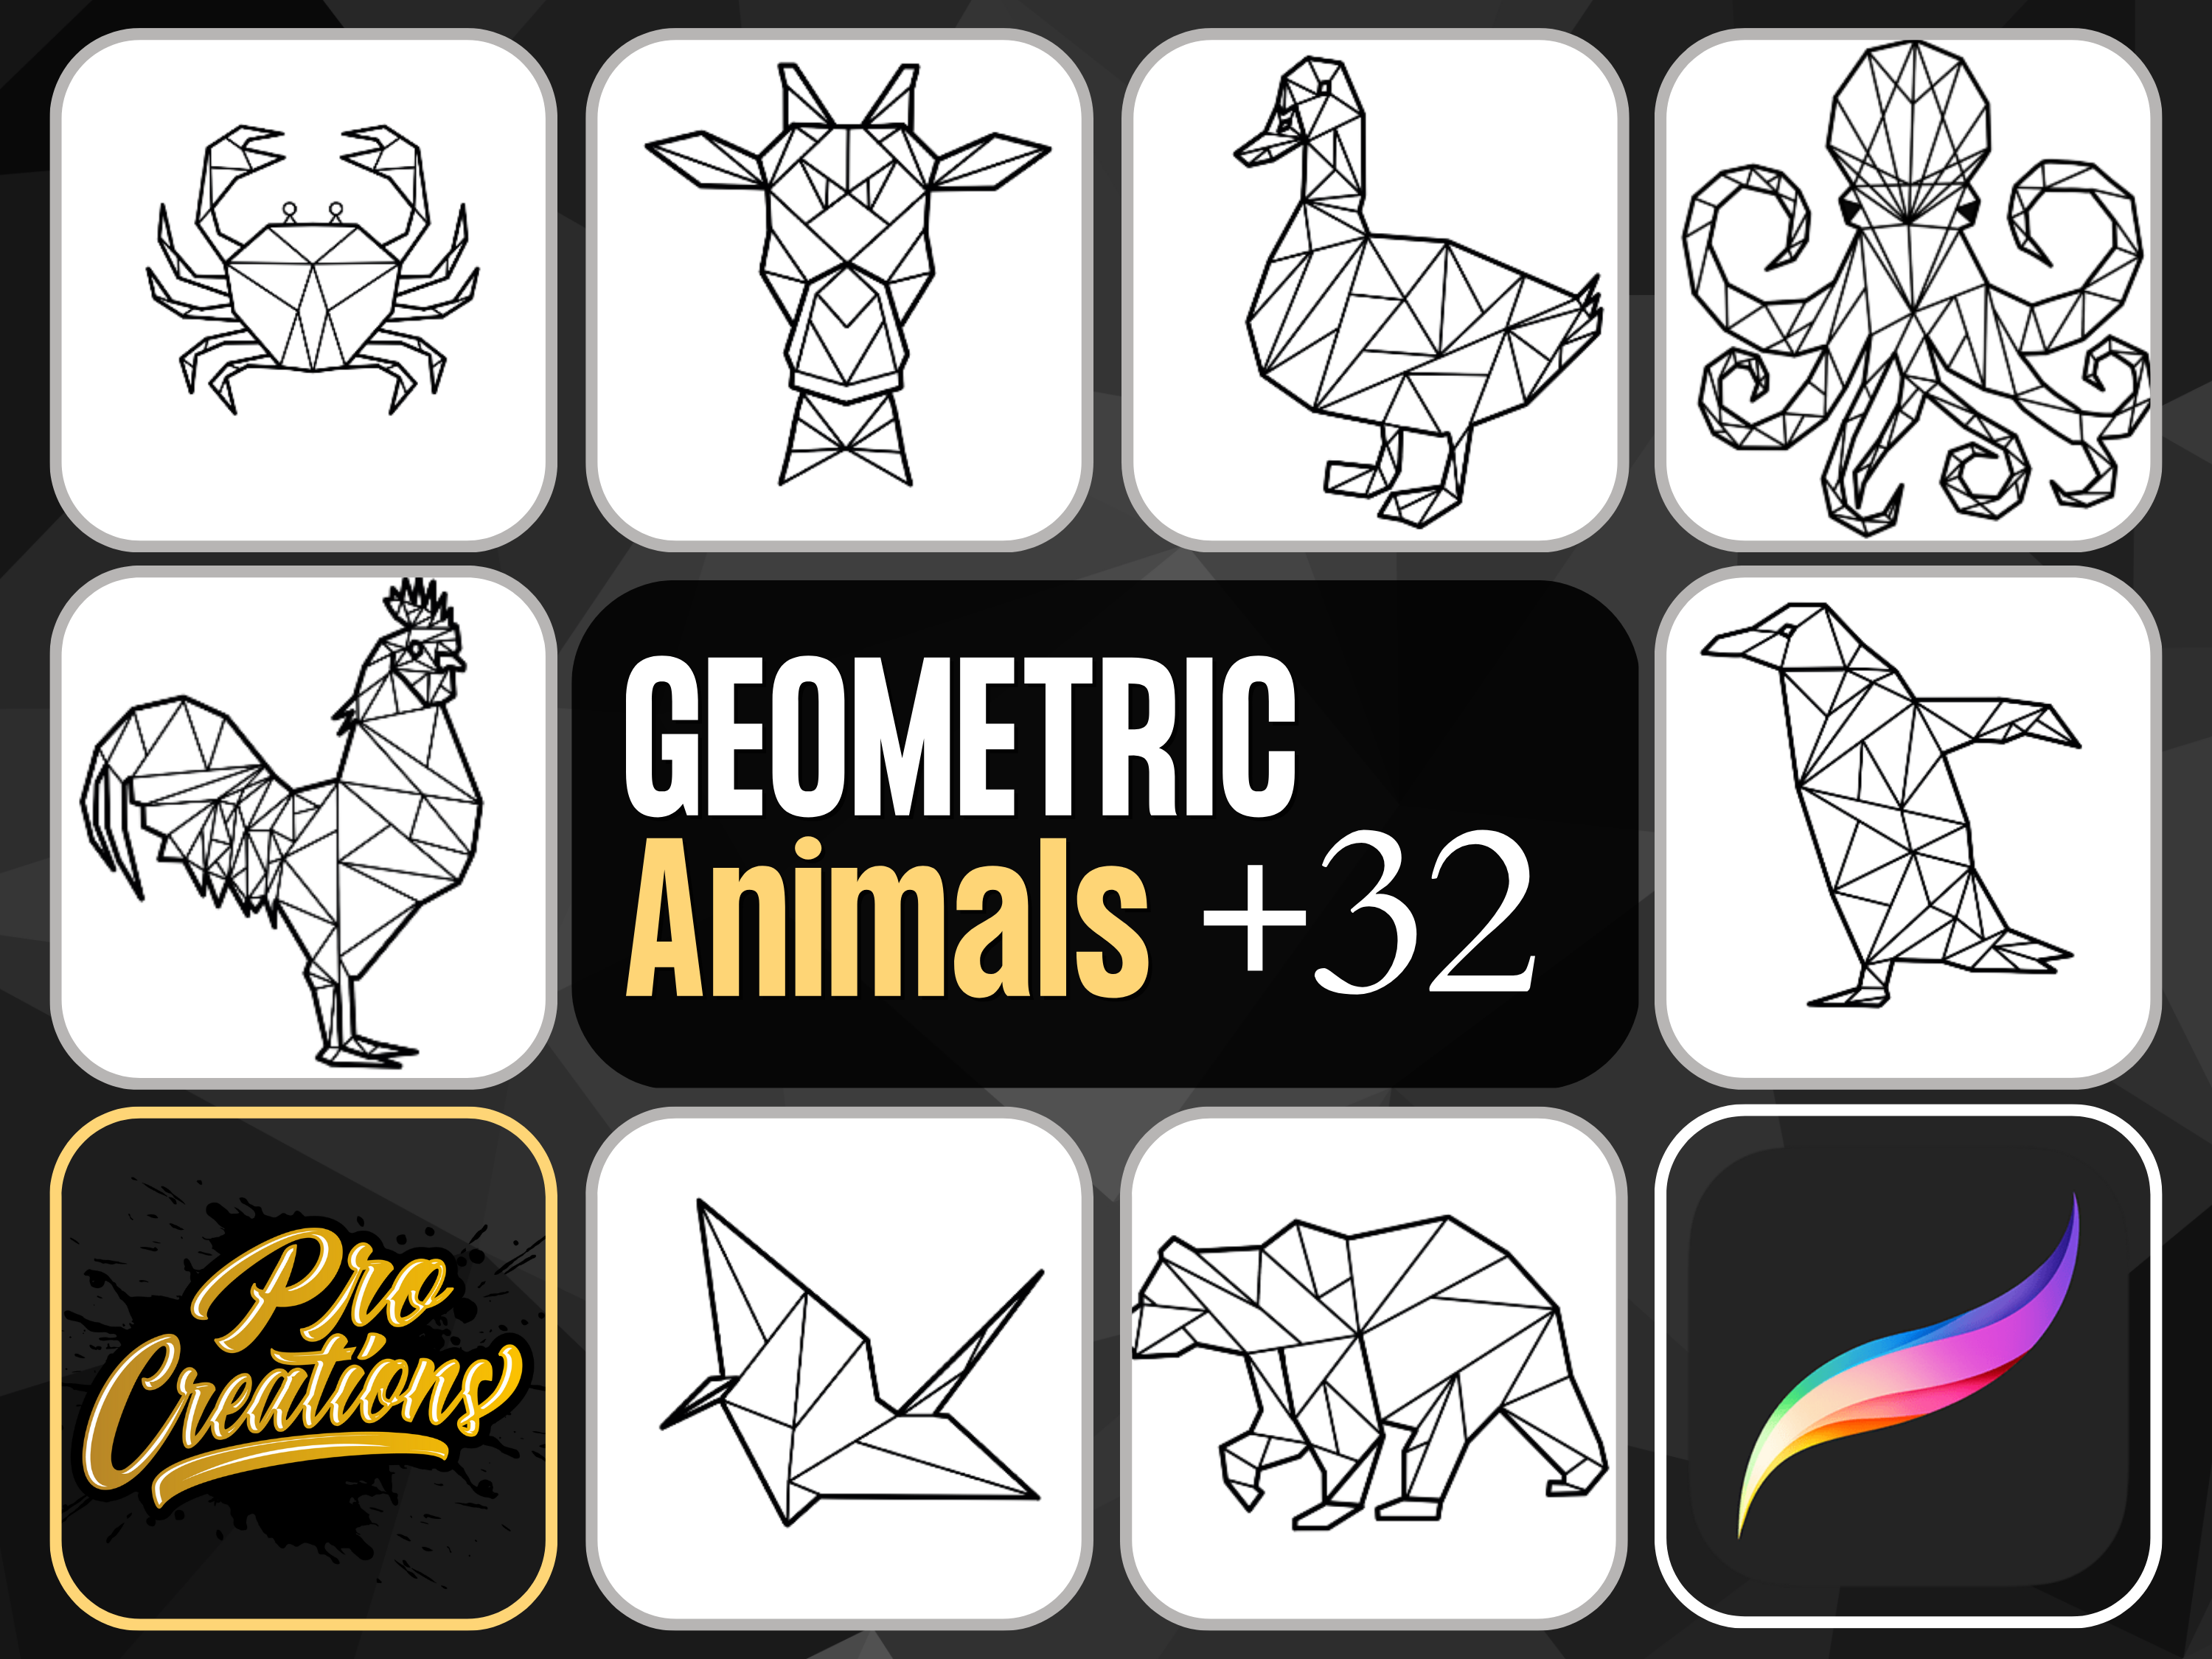 Paquete de pinceles geométricos y ornamentales MEGA +414 diseños